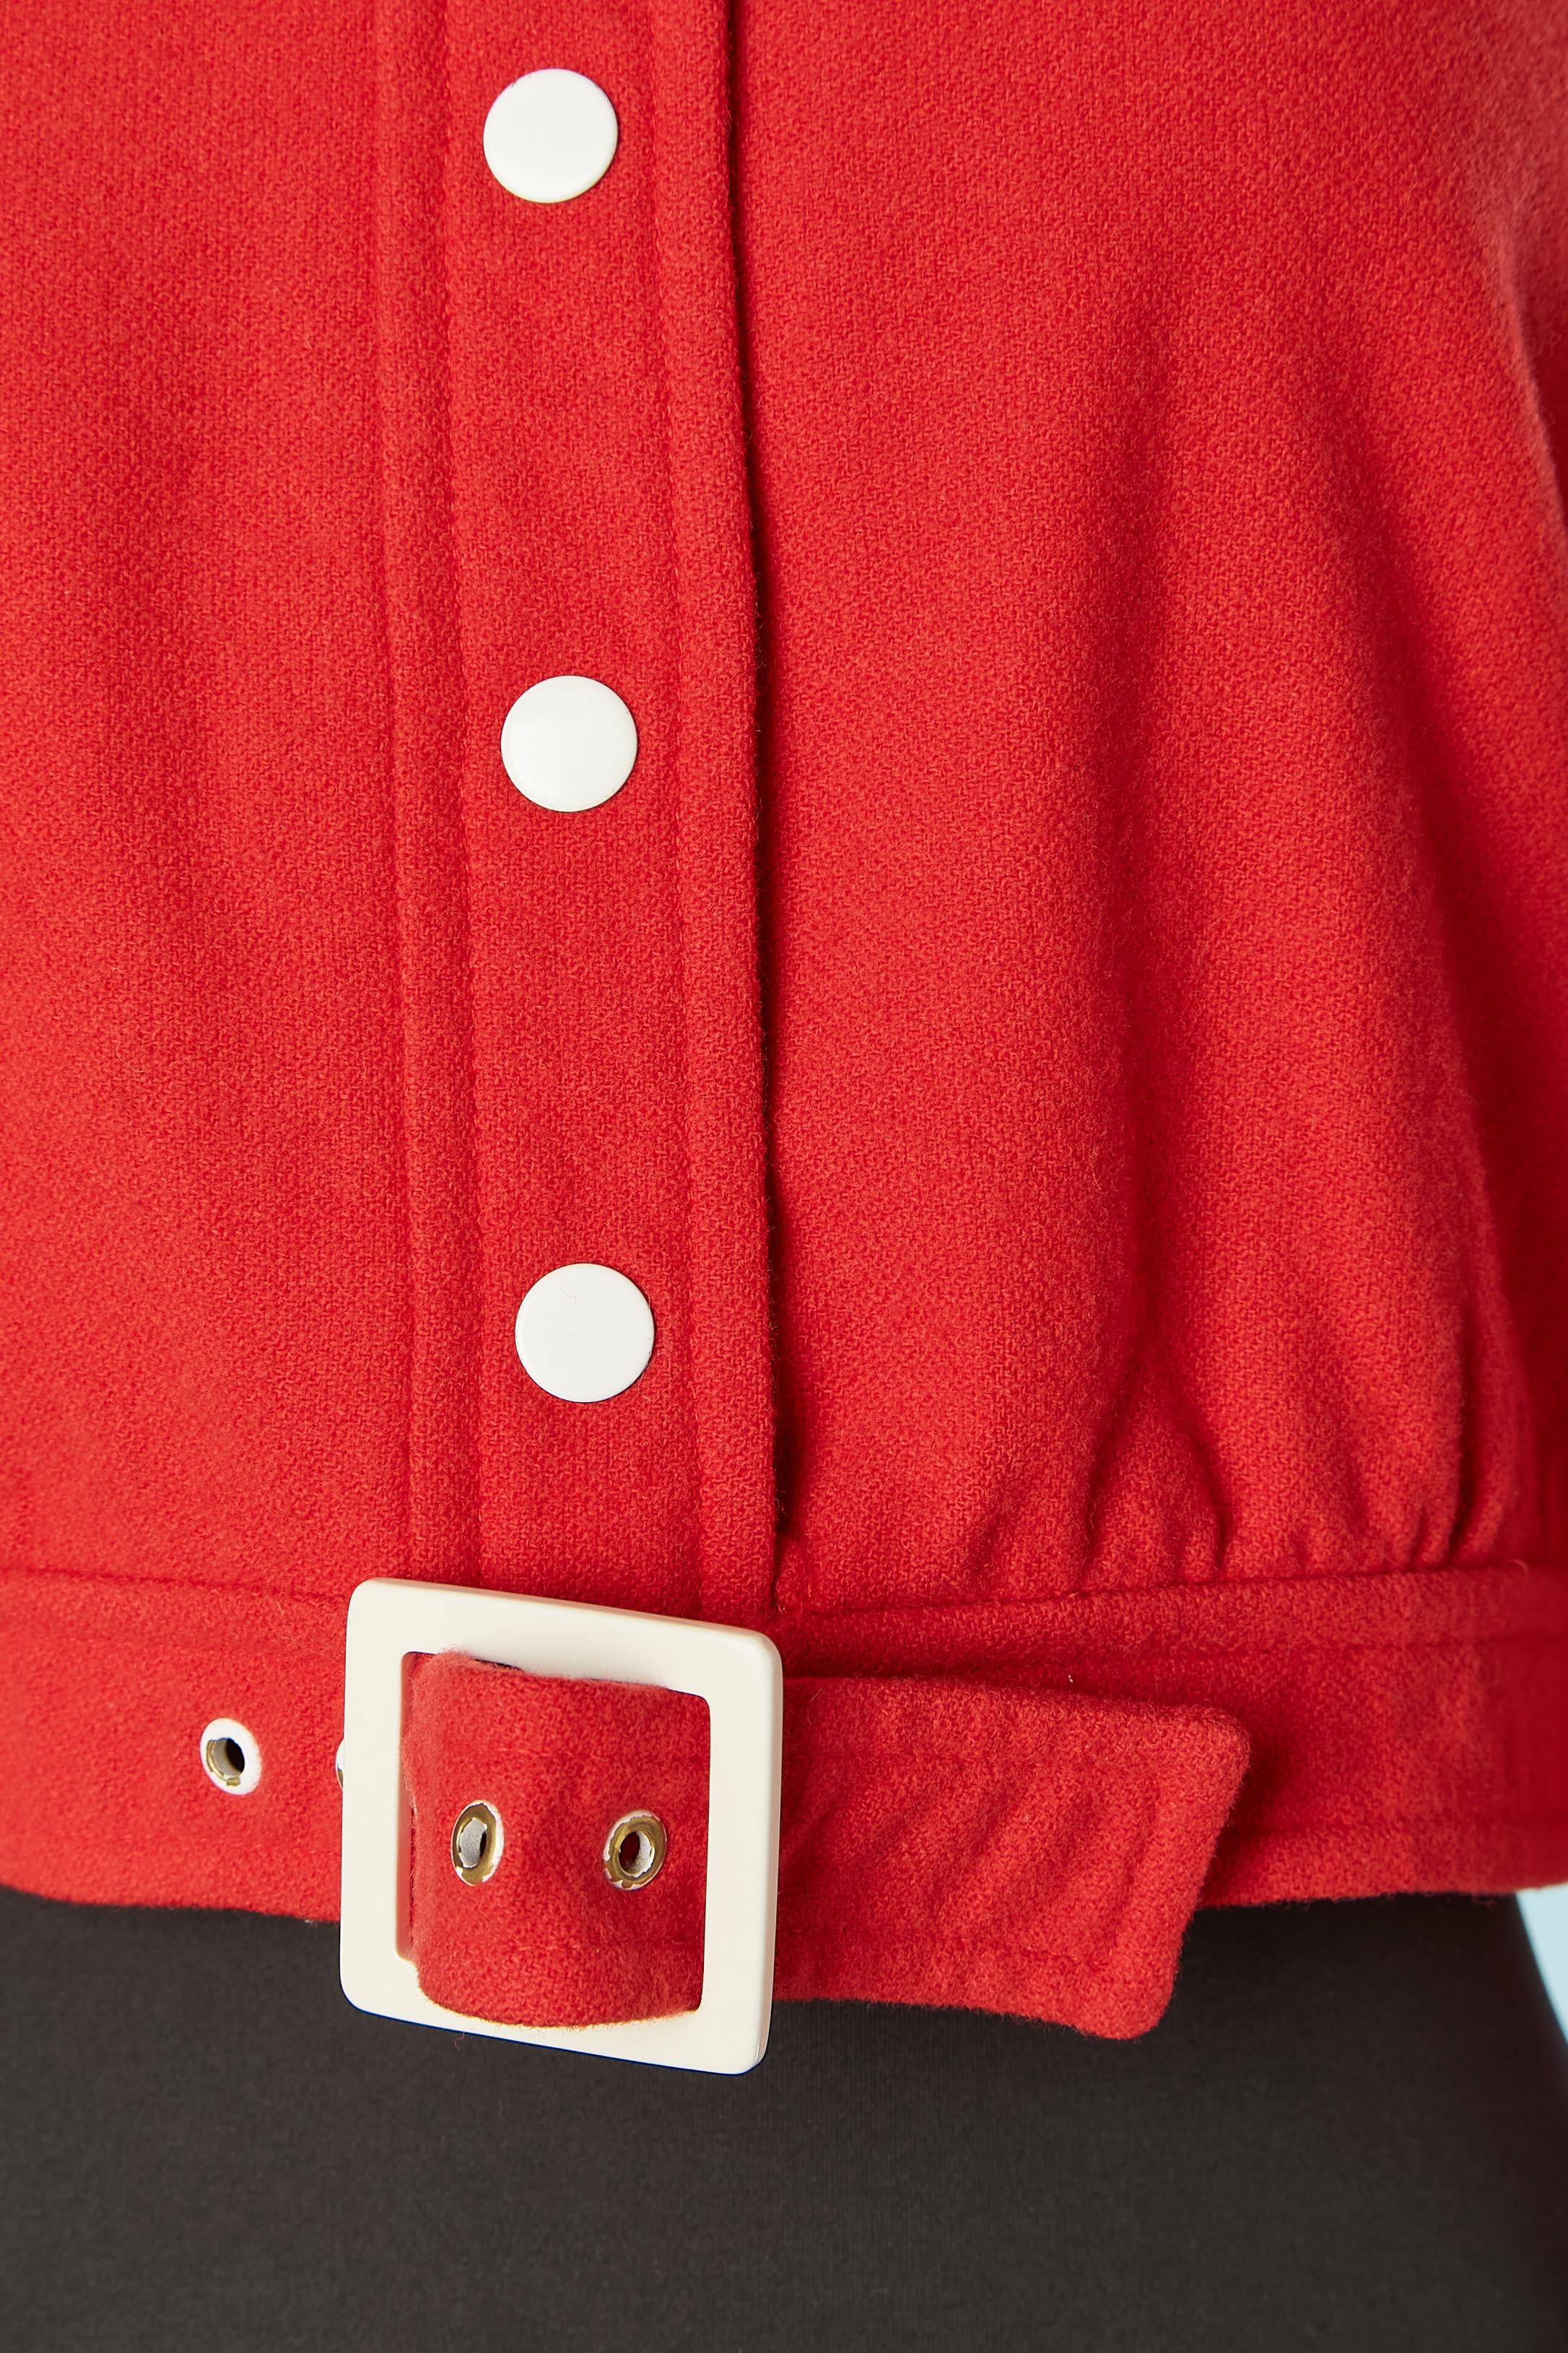 Veste courte en laine rouge avec boutons-pression et boucle blancs. Doublure en acétate. 
Numéroté : 0543809
TAILLE 